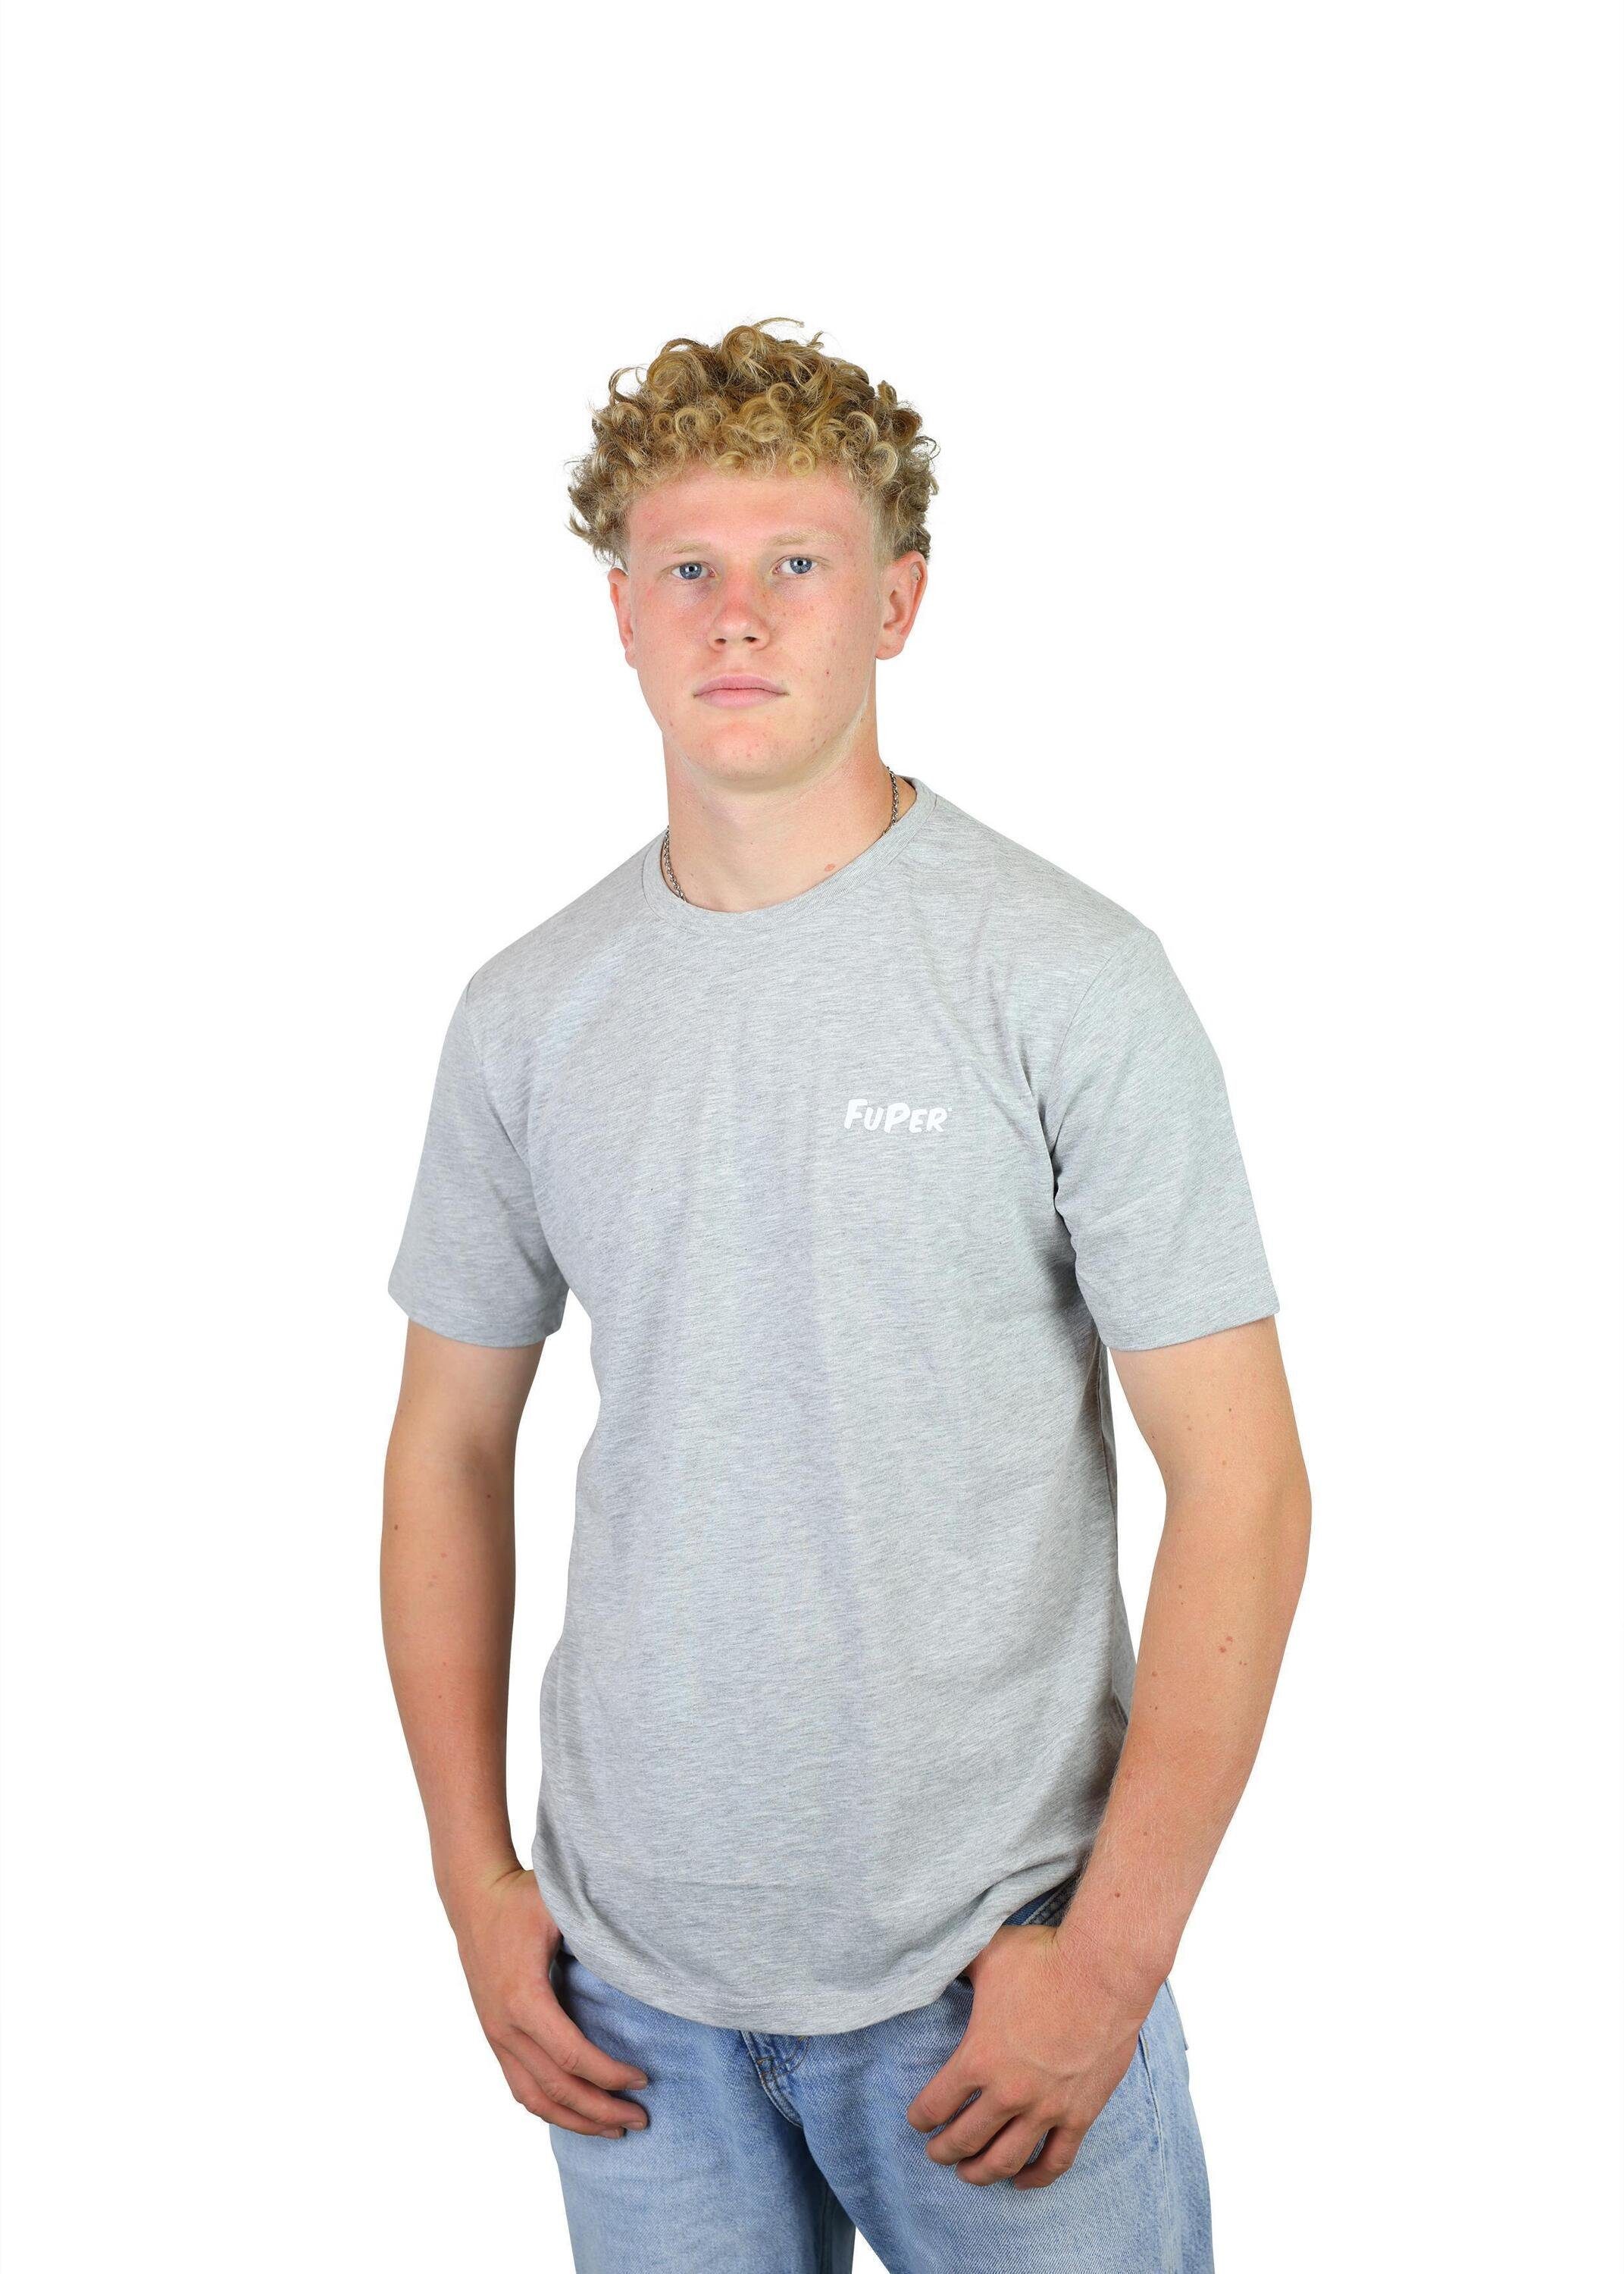 Grey Luis T-Shirt Kinder, FuPer aus Jugend Fußball, Baumwolle, für